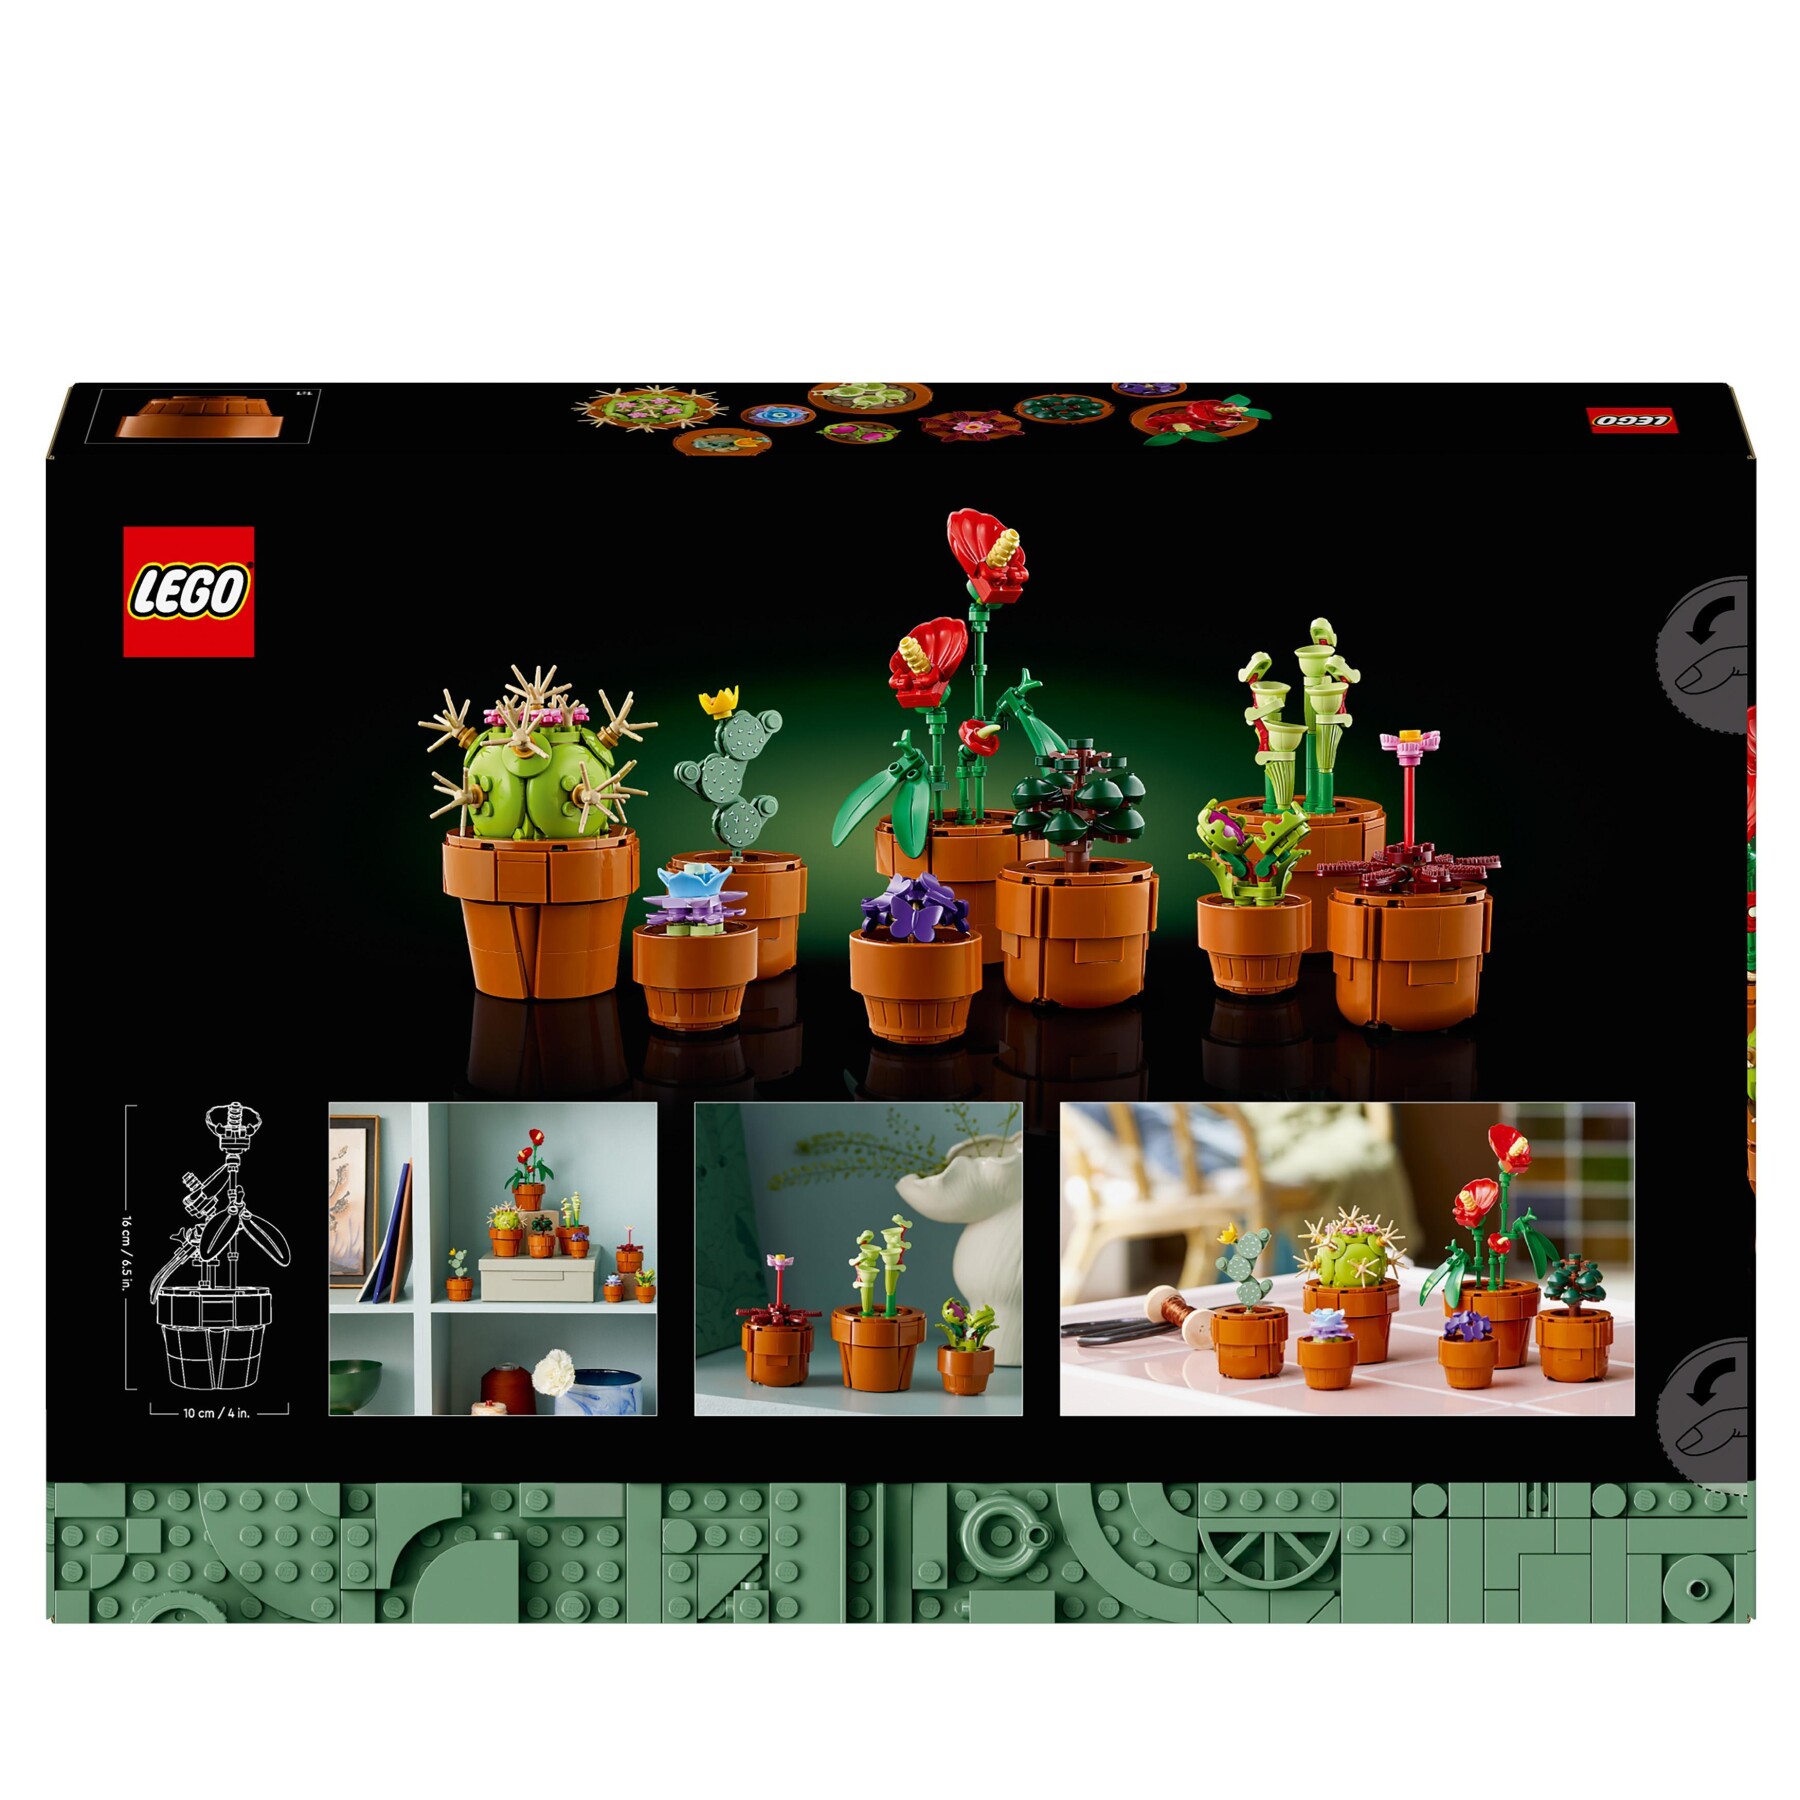 Lego icons 10329 piantine, collezione botanica con fiori artificiali, decorazione casa, idea regalo di compleanno donna o uomo - Lego, LEGO ICONS